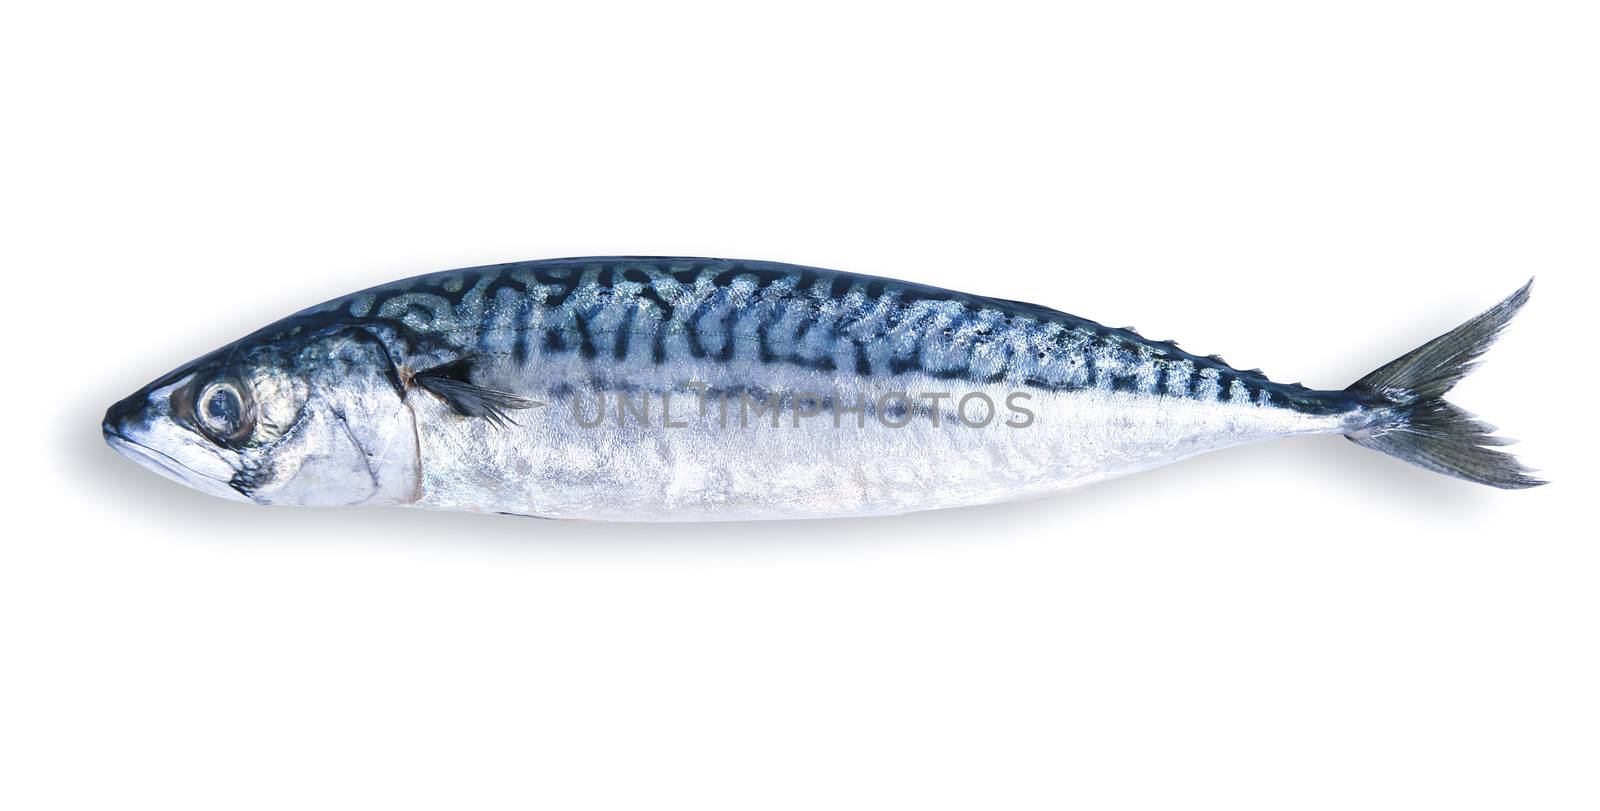 fresh mackerel in white background by photobeps